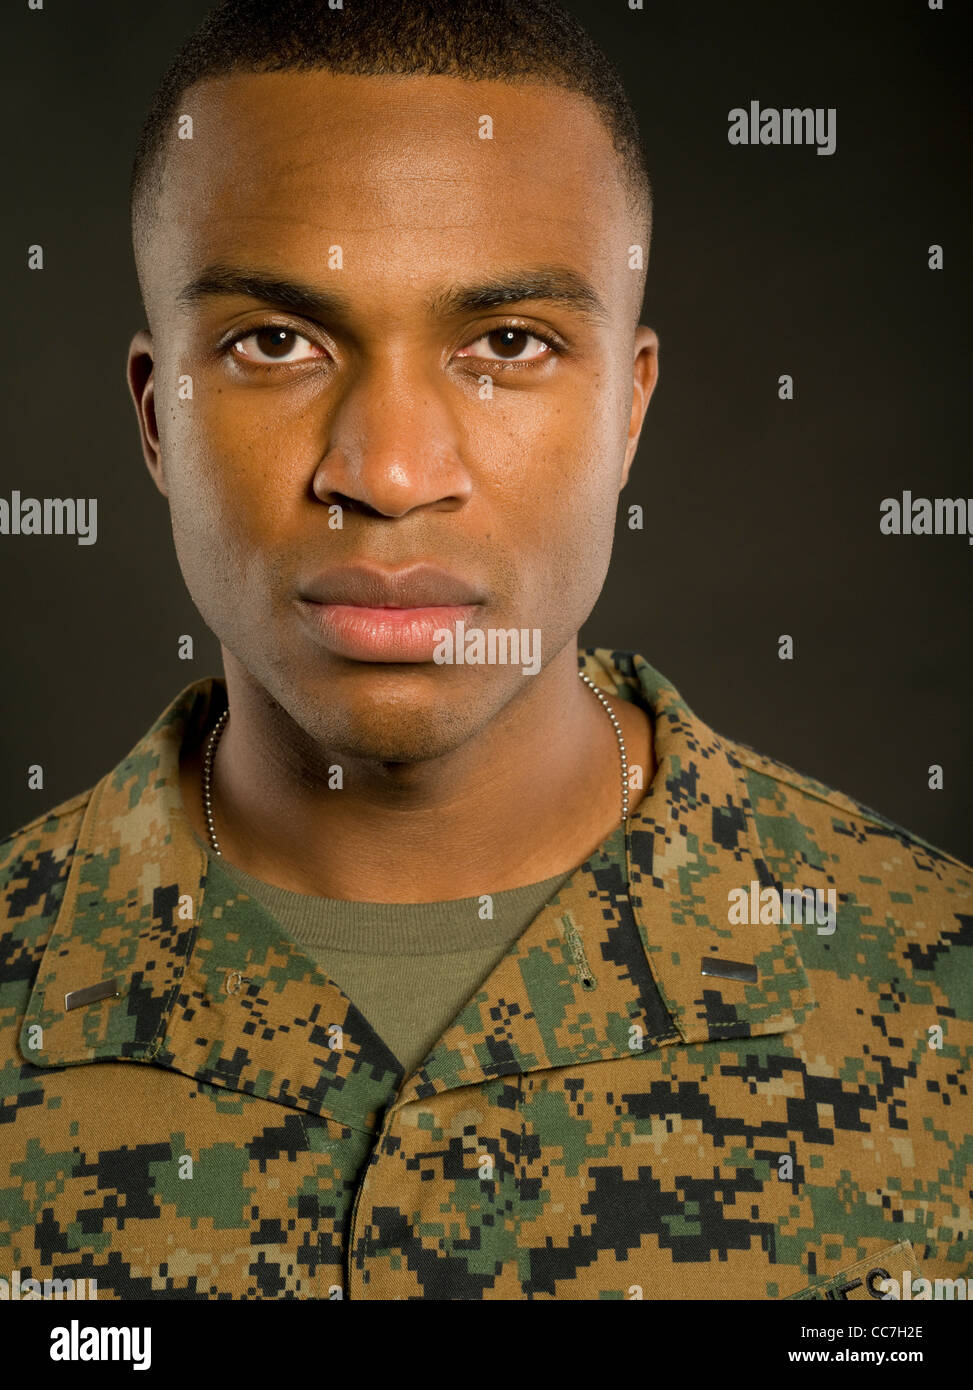 United States Marine Corps Officier Marine Corps Lutte contre l'uniforme de l'utilitaire camouflage MARPAT woodland pattern numérique Banque D'Images